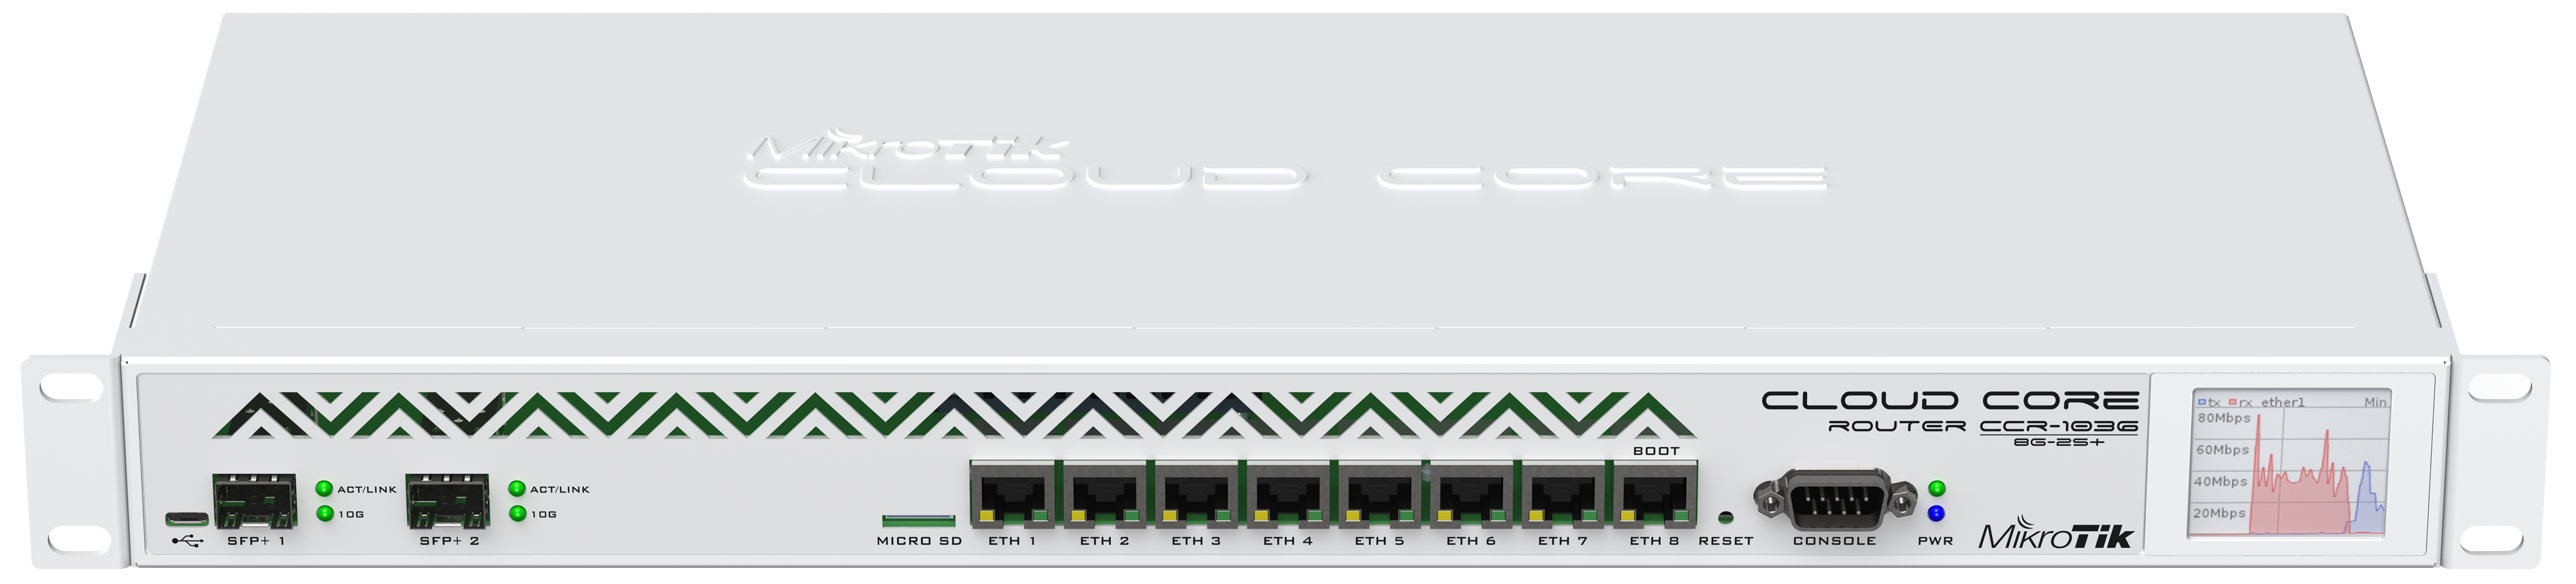 Jual Cloud Core Router 1036-8G-2S+ - Harga, Spesifikasi dan Review